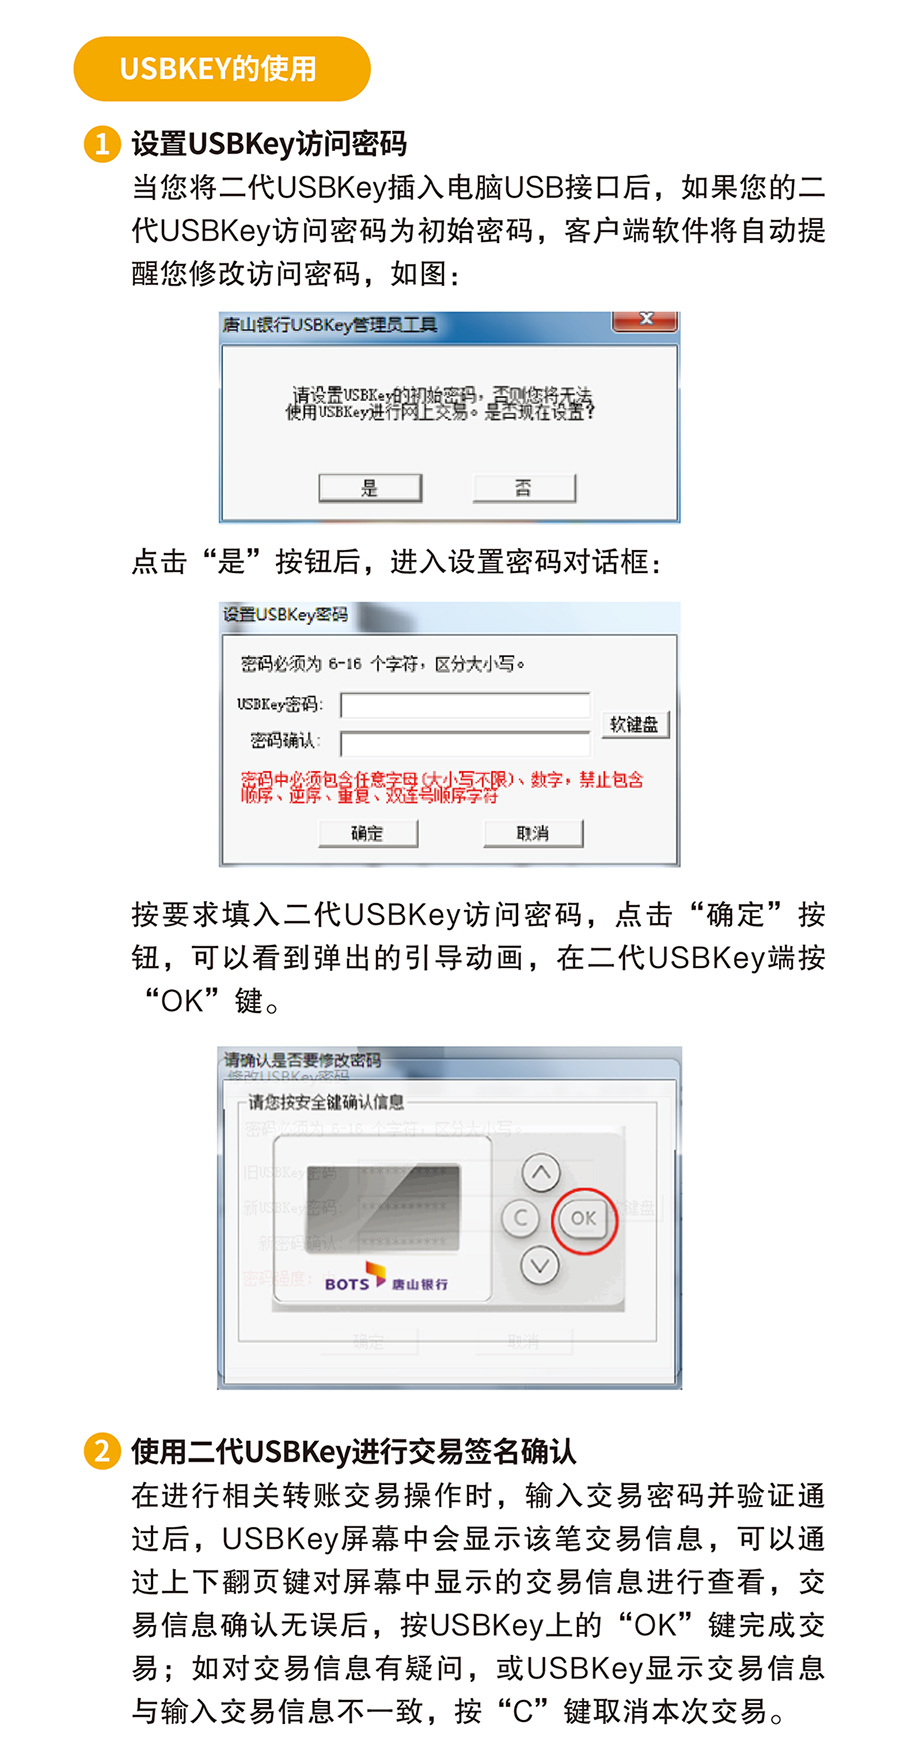 唐山银行二代USBKEY使用说明